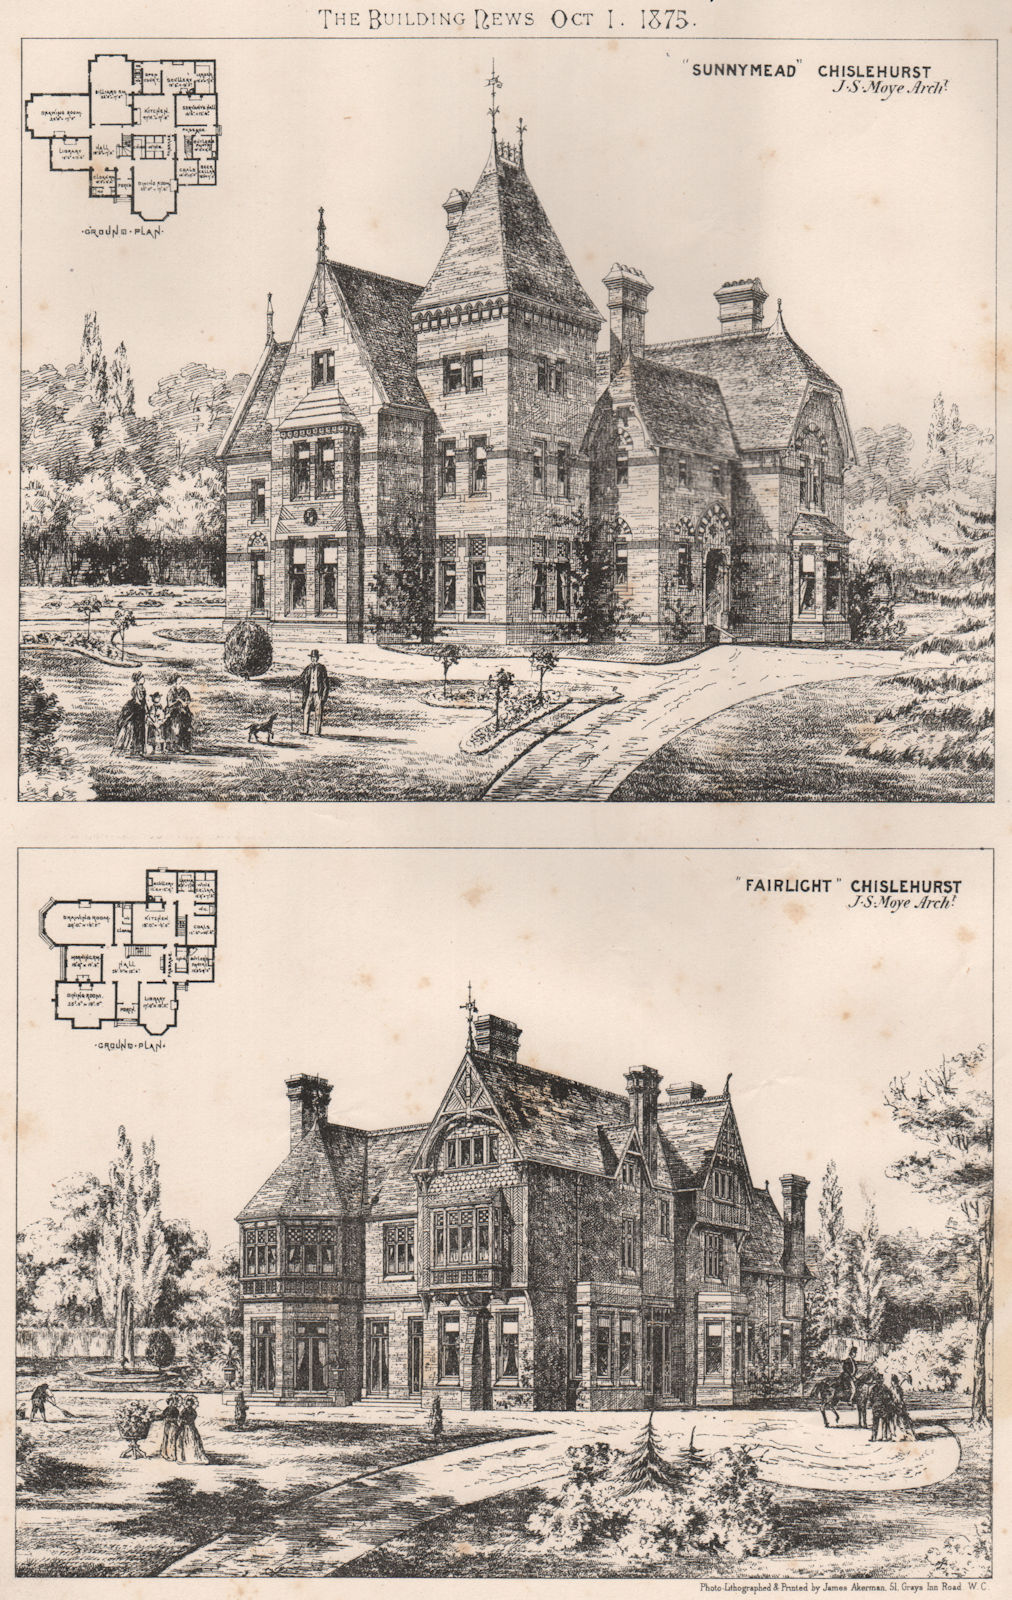 "Sunnymead" & "Fairlight", Chislehurst; J.S. Moye Architect 1875 old print